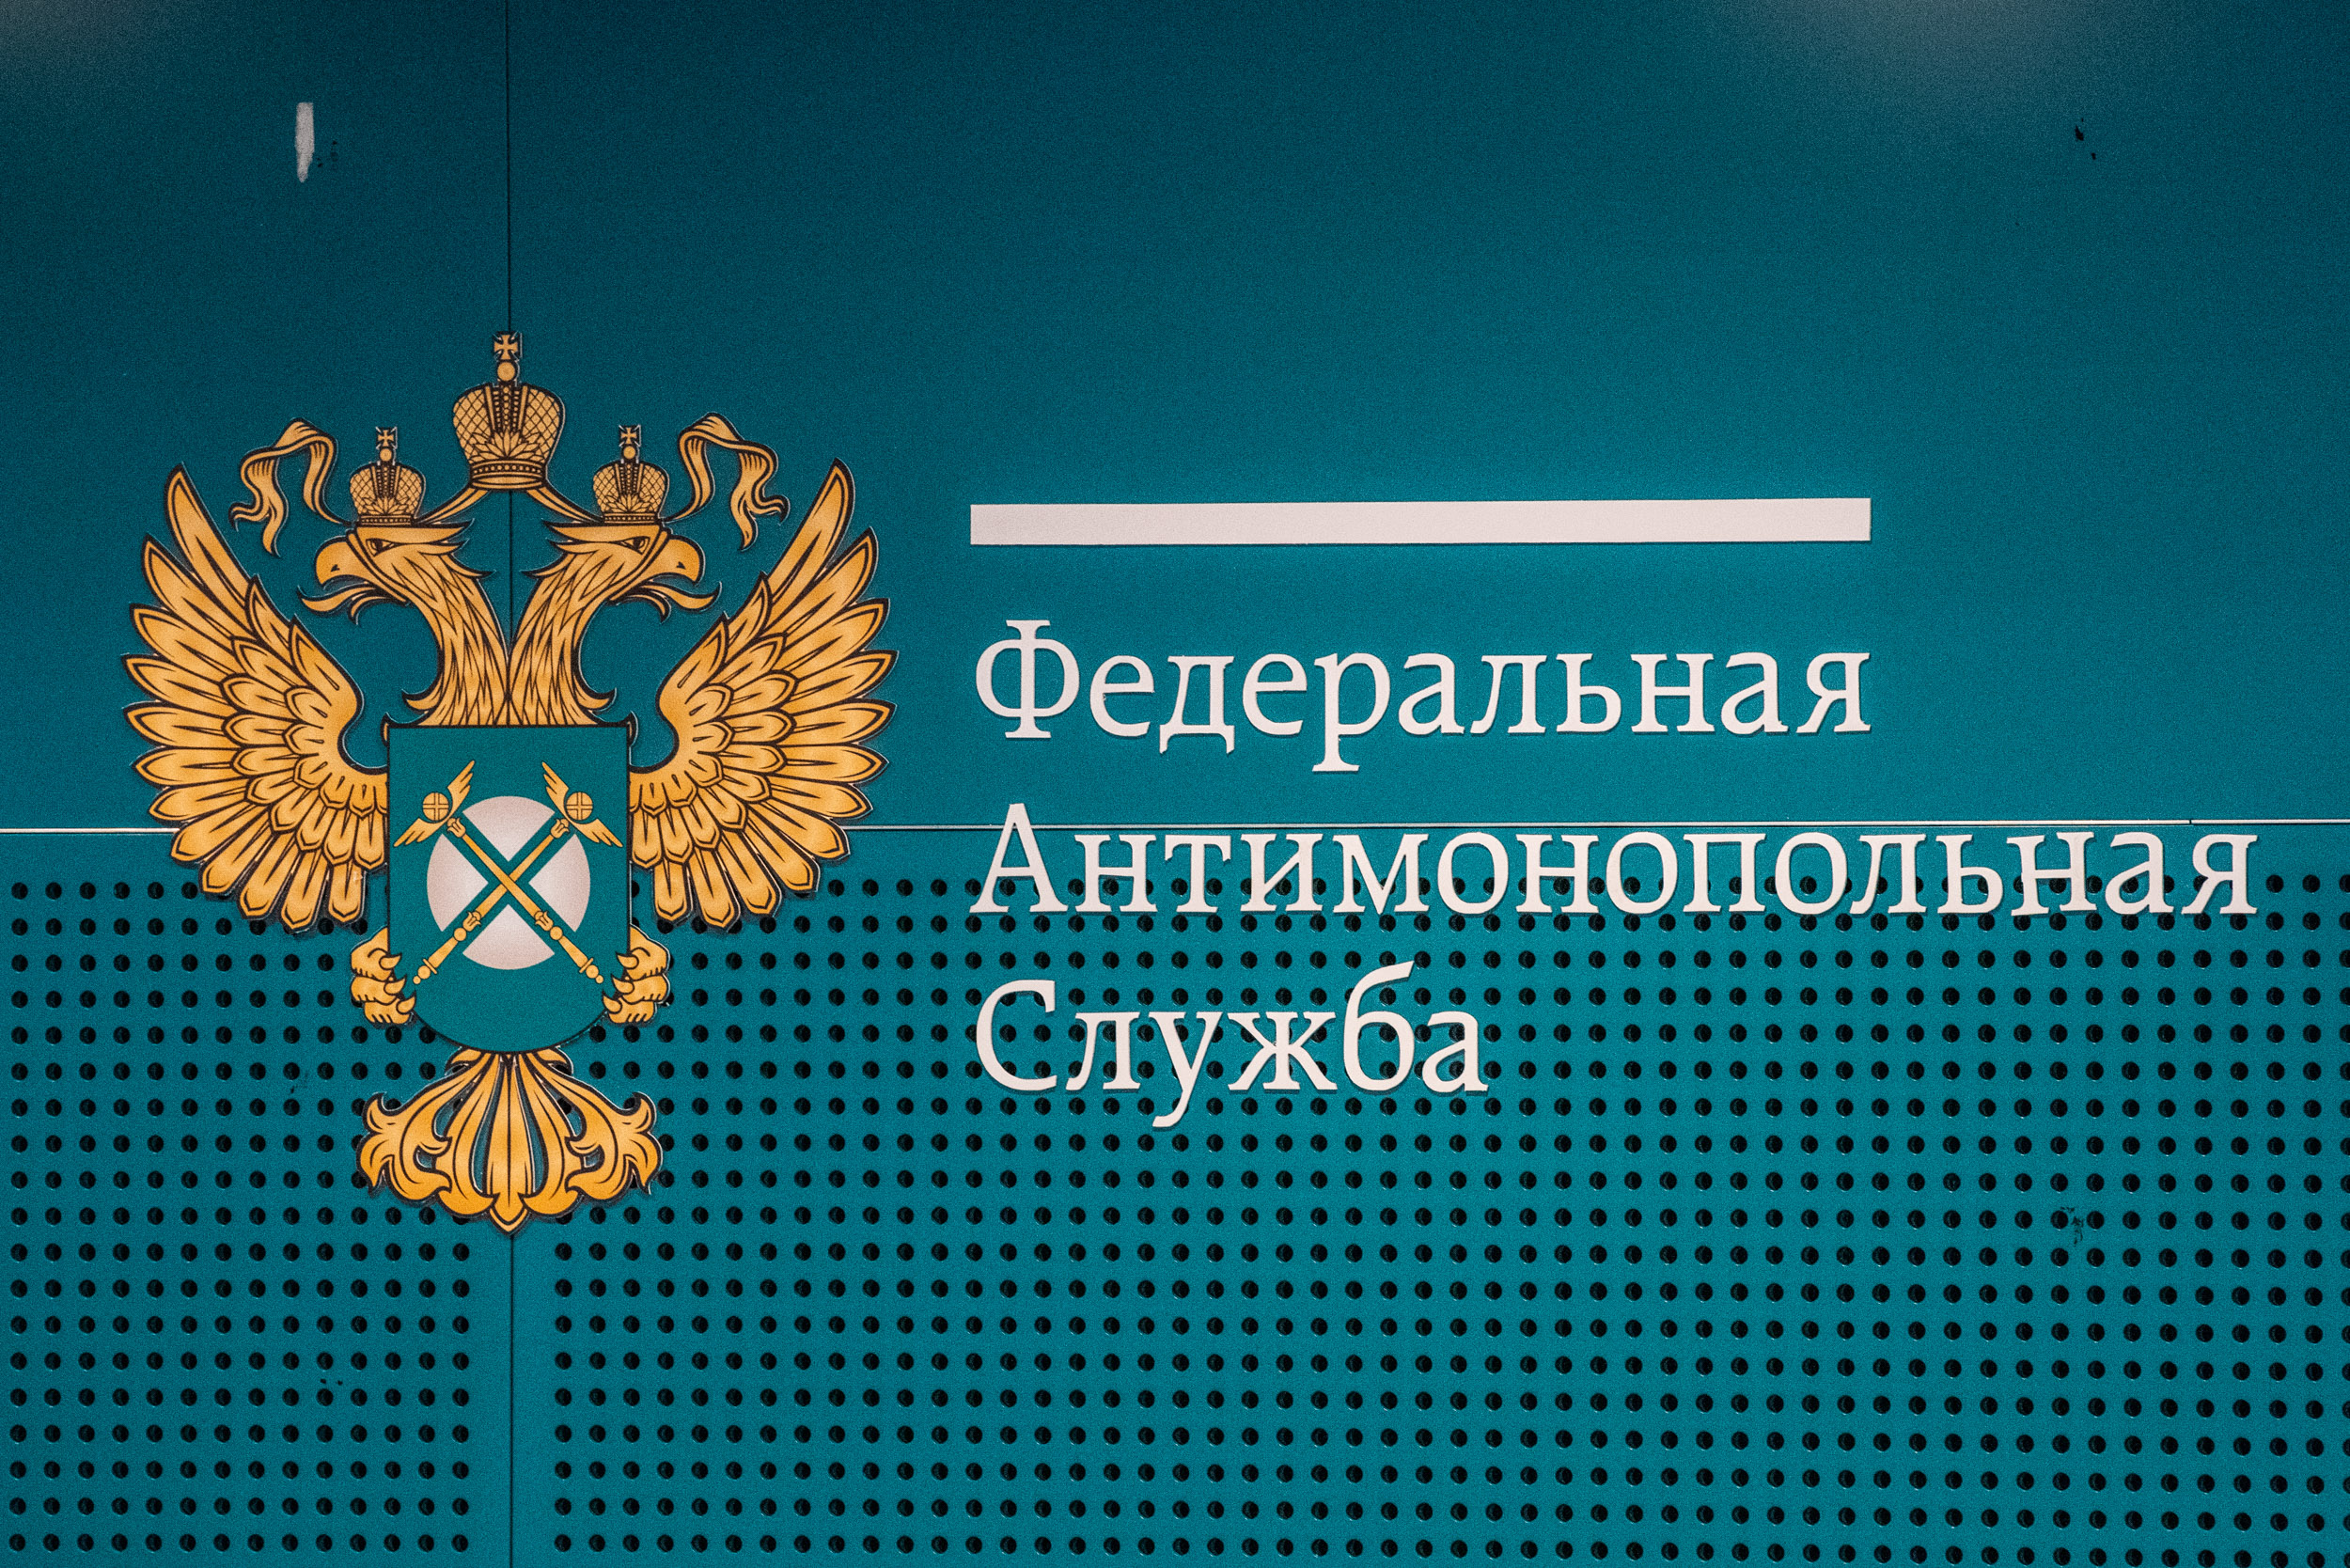 ФАС России выпустила разъяснение о практике применения Закона о контрактной системе